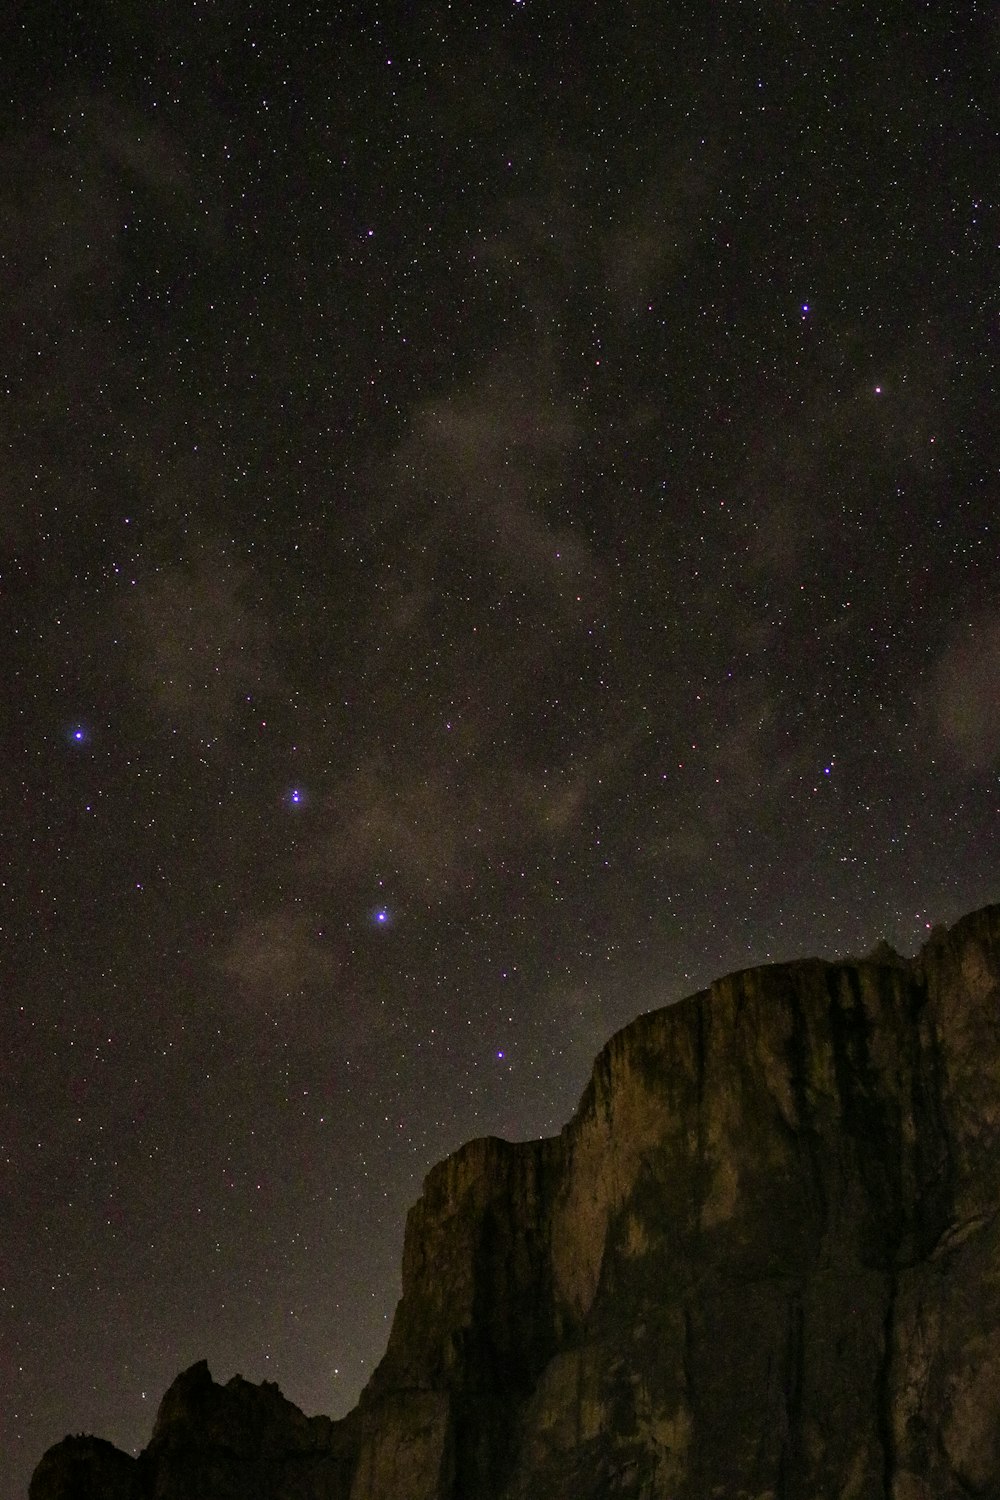 Brauner Rocky Mountain unter sternenklarer Nacht